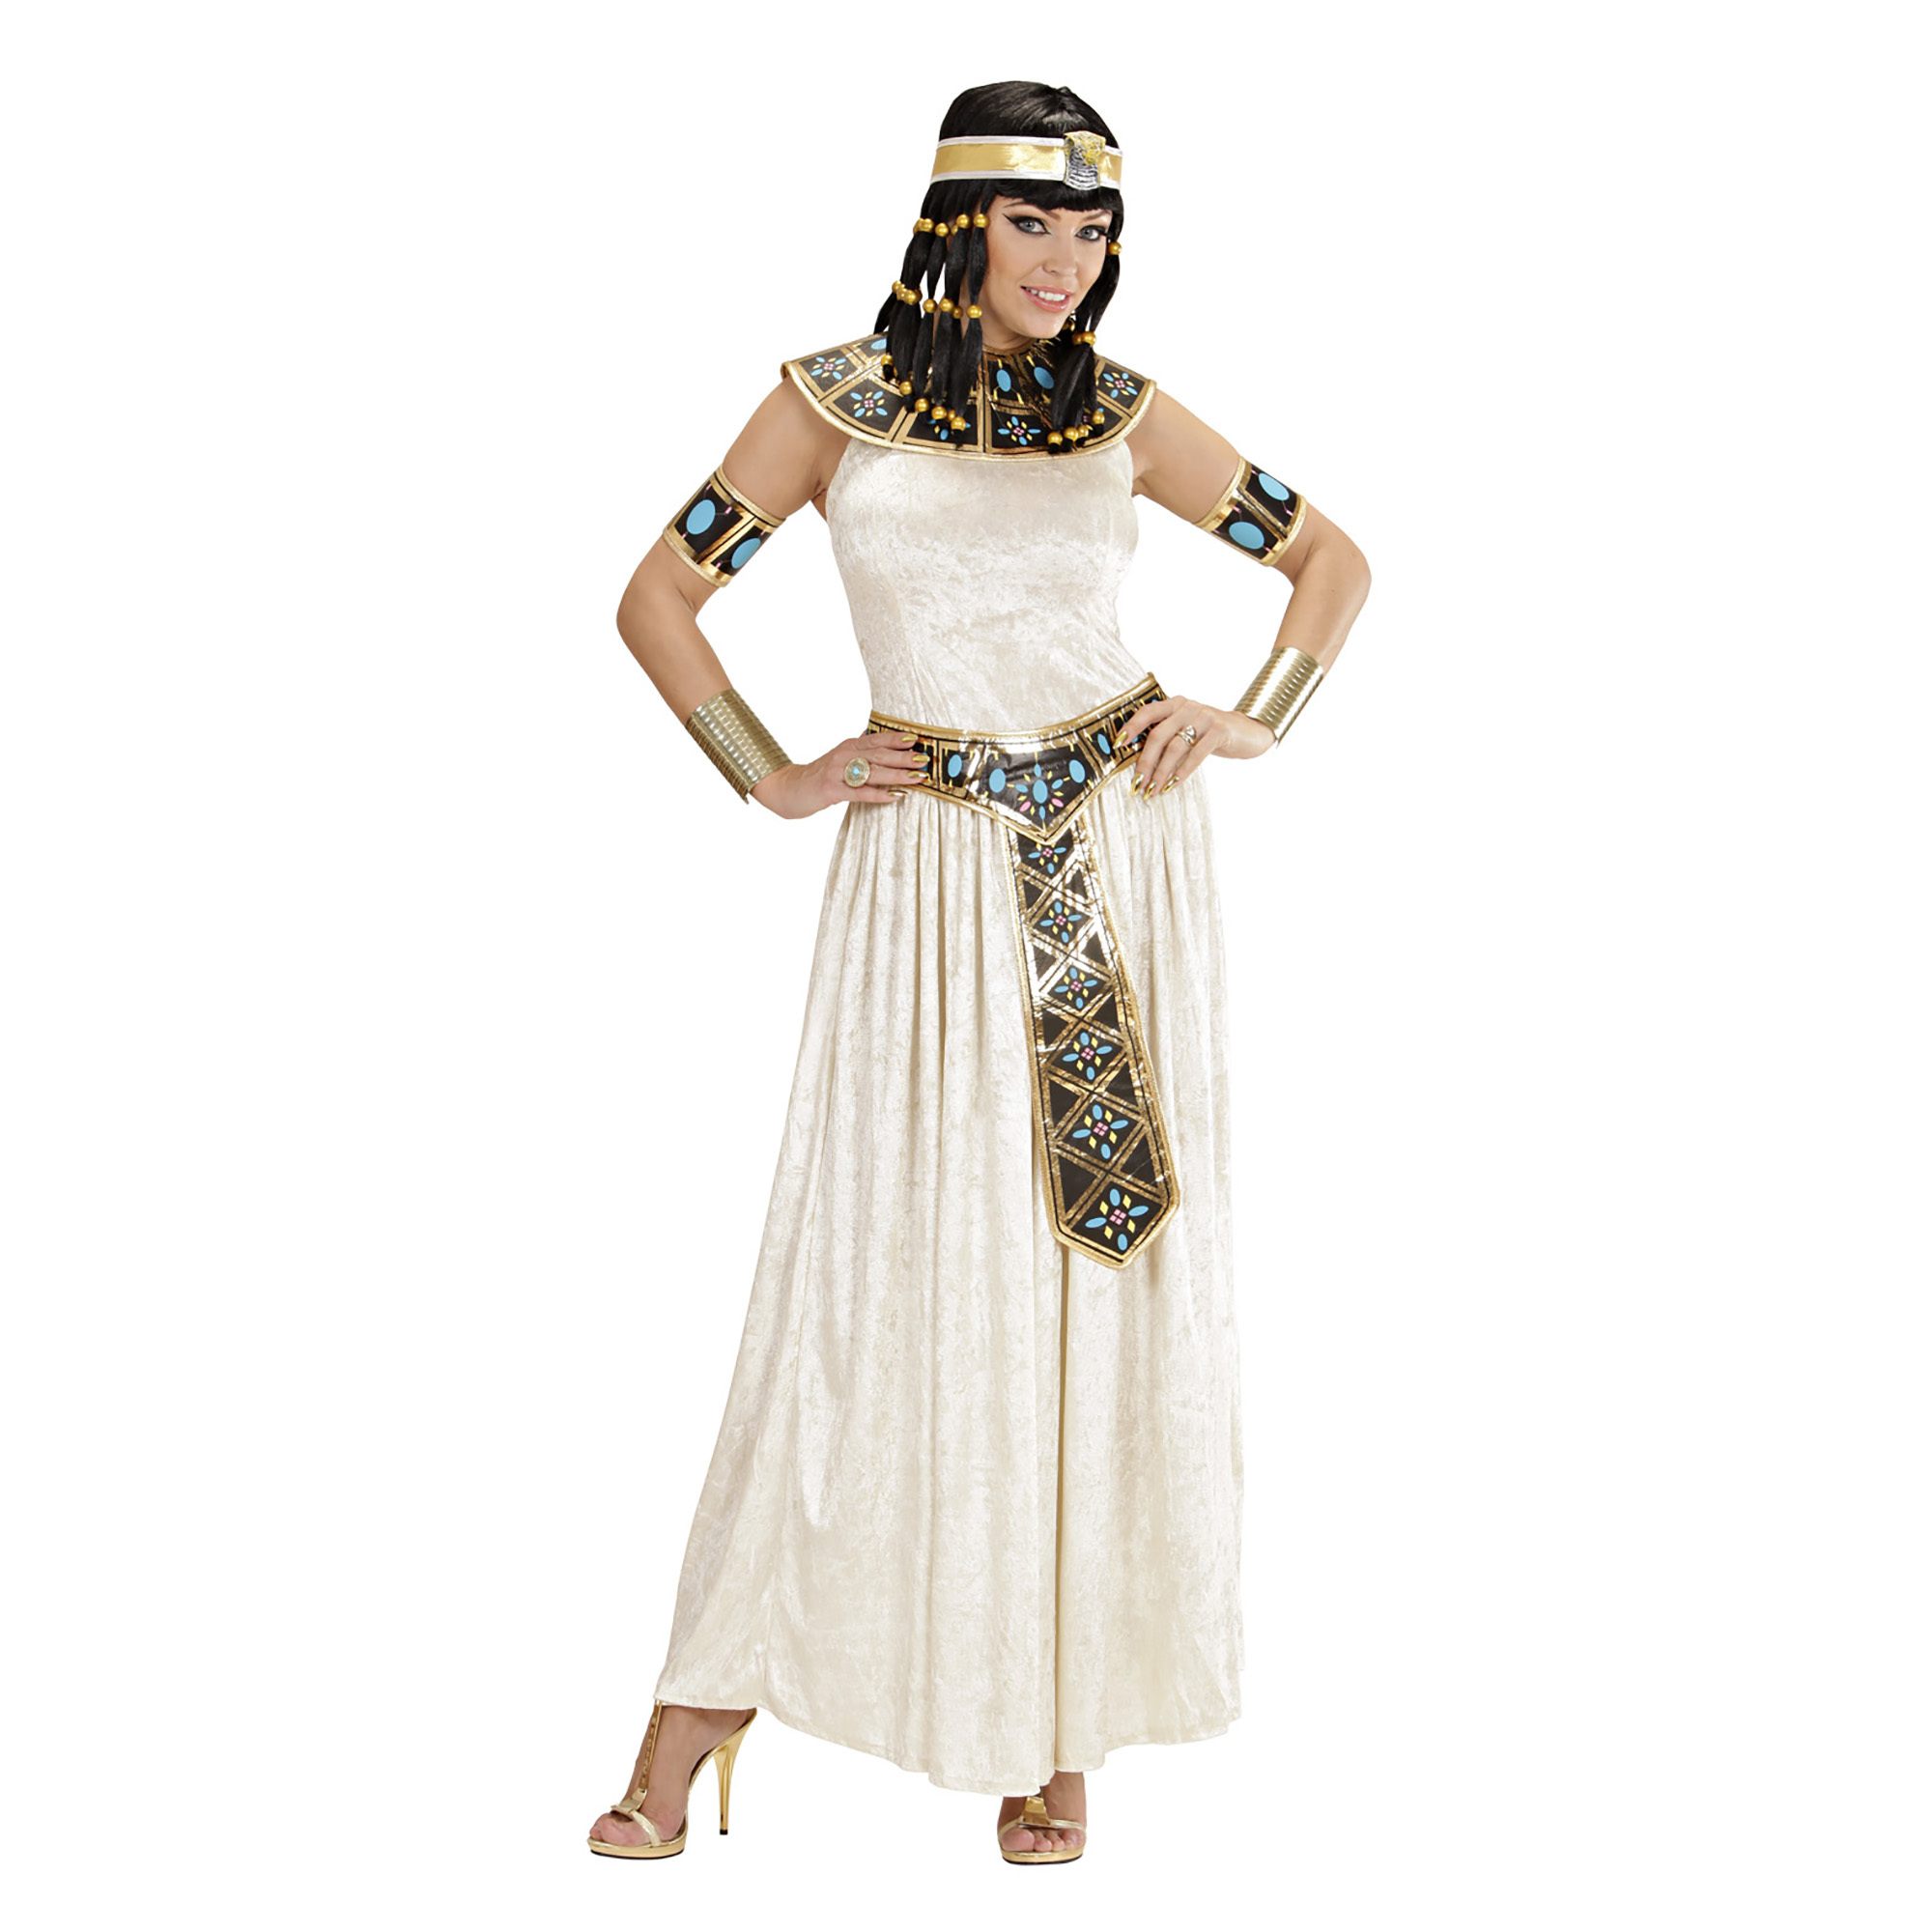 Egyptische keizerin van de nijl cleopatra kostuum dame